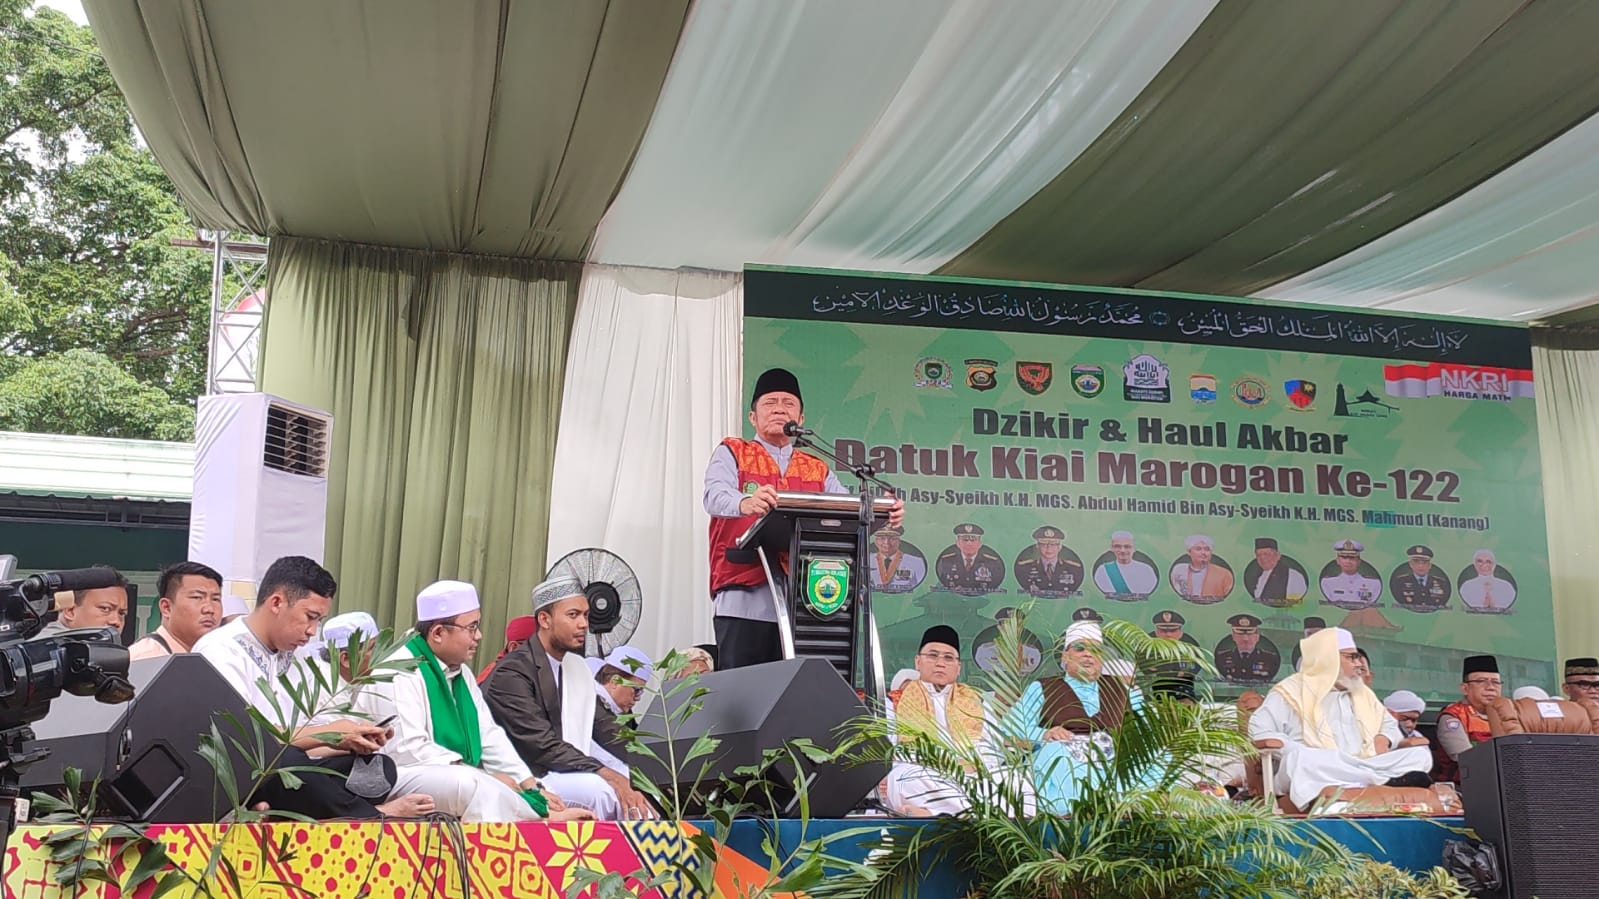 Pemprov Sumsel dan Pemkot Palembang Bakal Bangun Islamic Center, Ikon Ulama Datuk Kiai Marogan